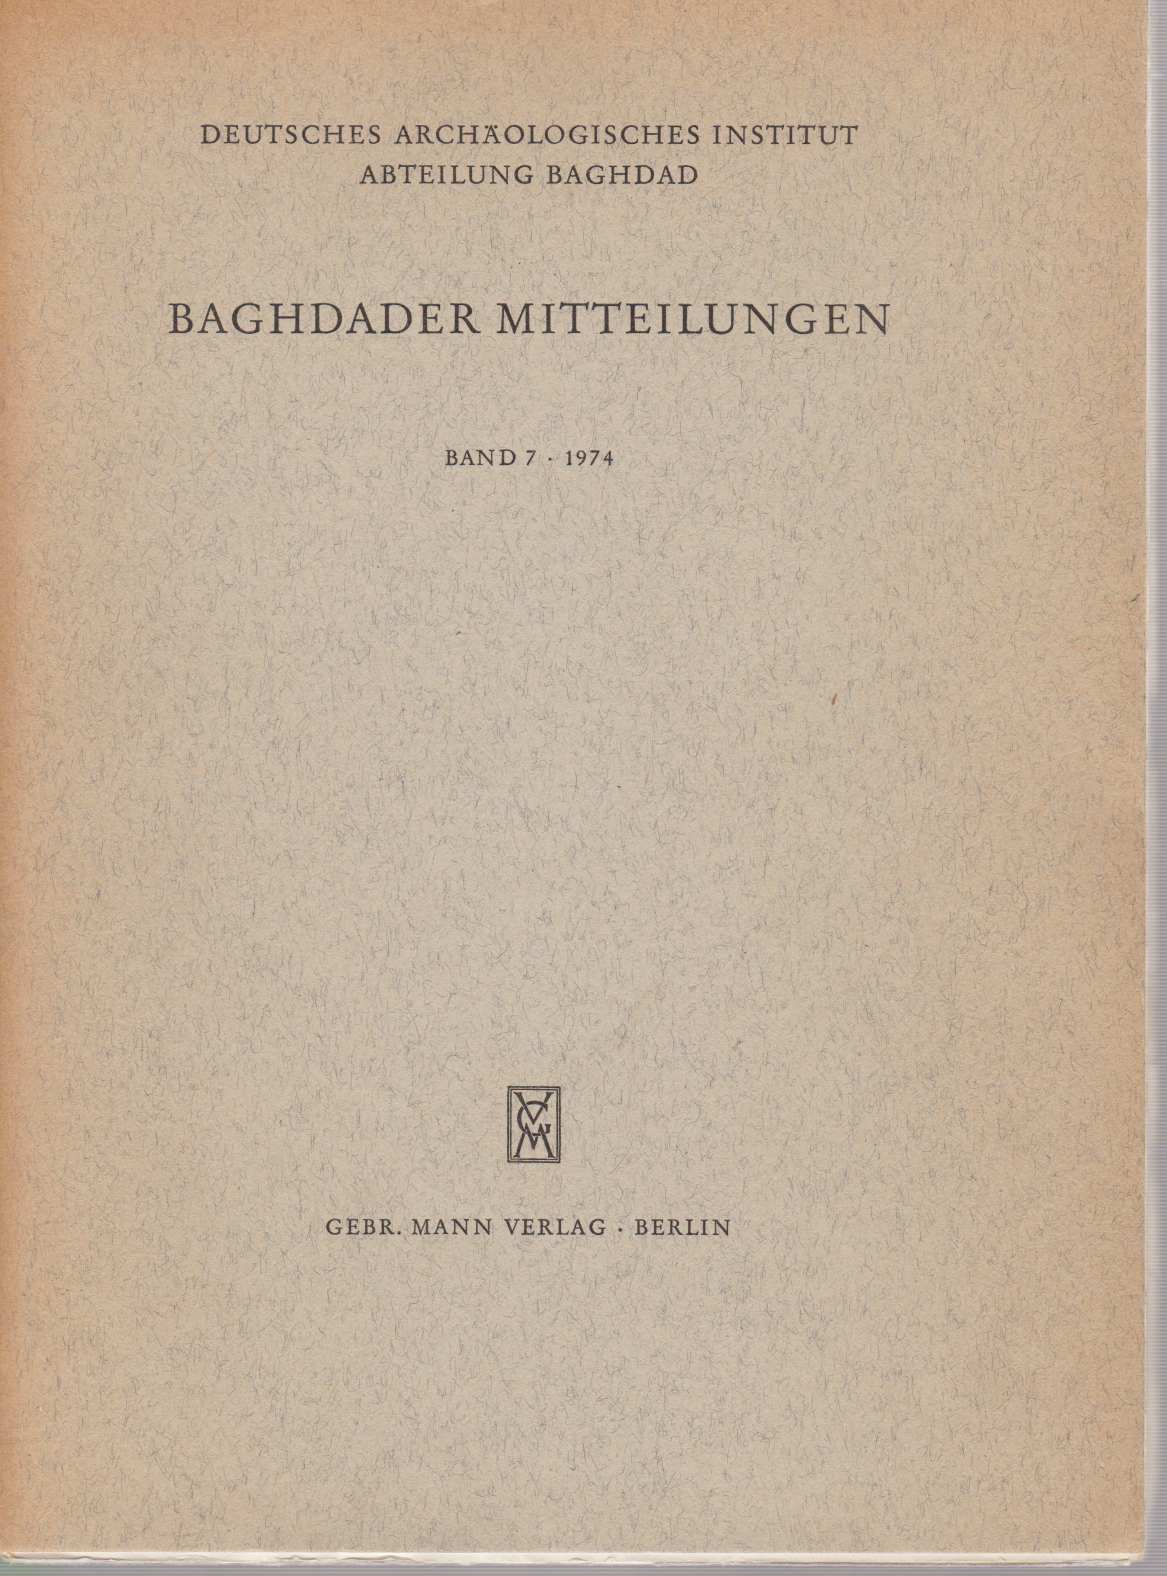 Baghdader Mitteilungen Band 7, 1974. Deutsches Archäologisches Institut, Abteilung Baghdad.